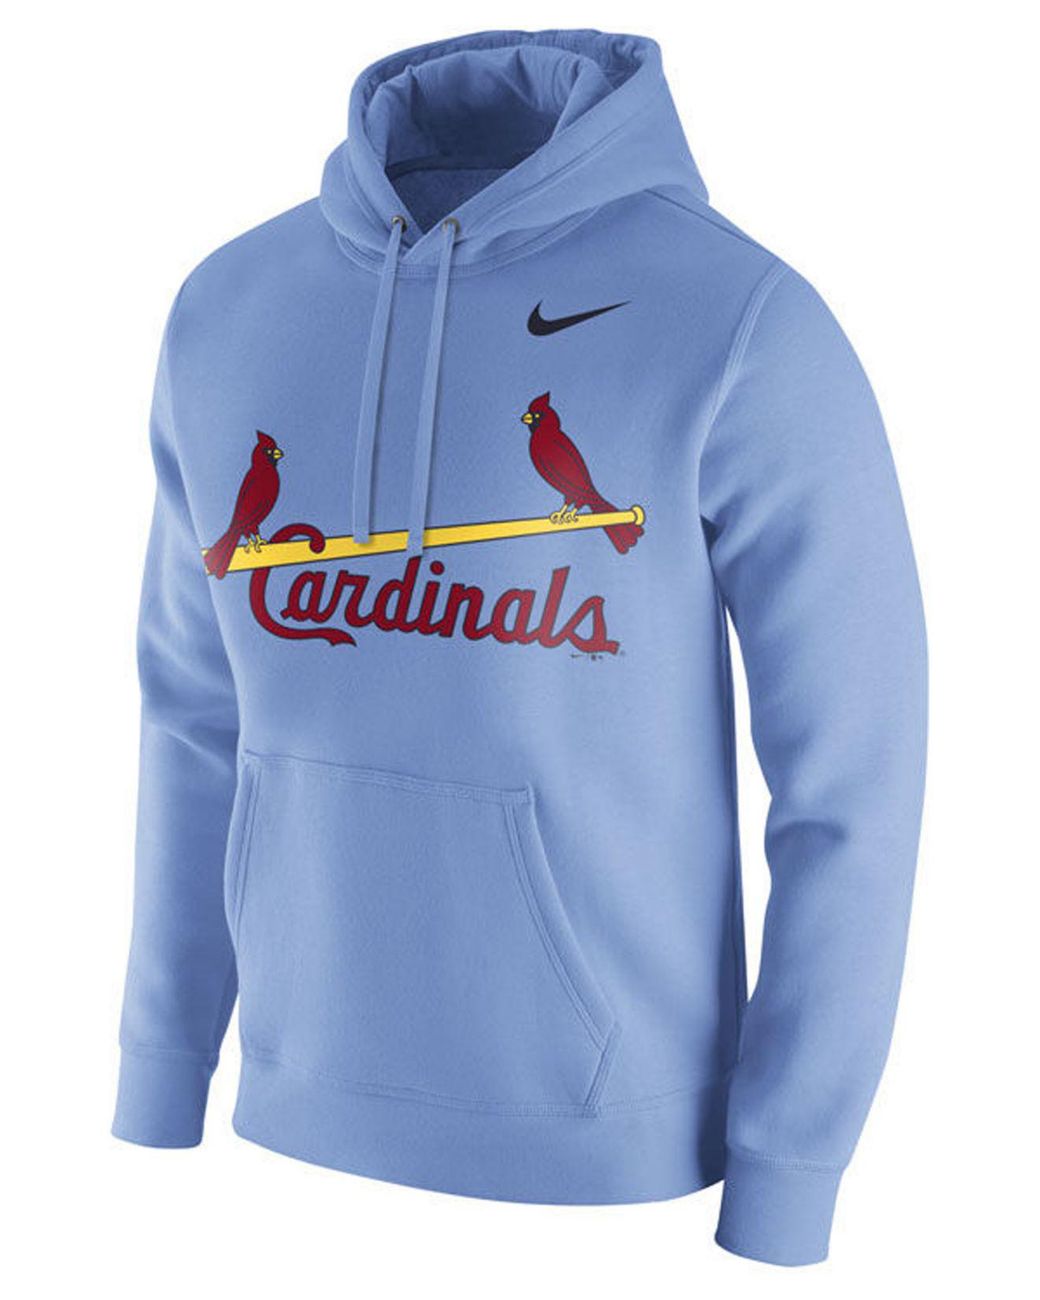 St Louis Cardinals Sweatshirt 